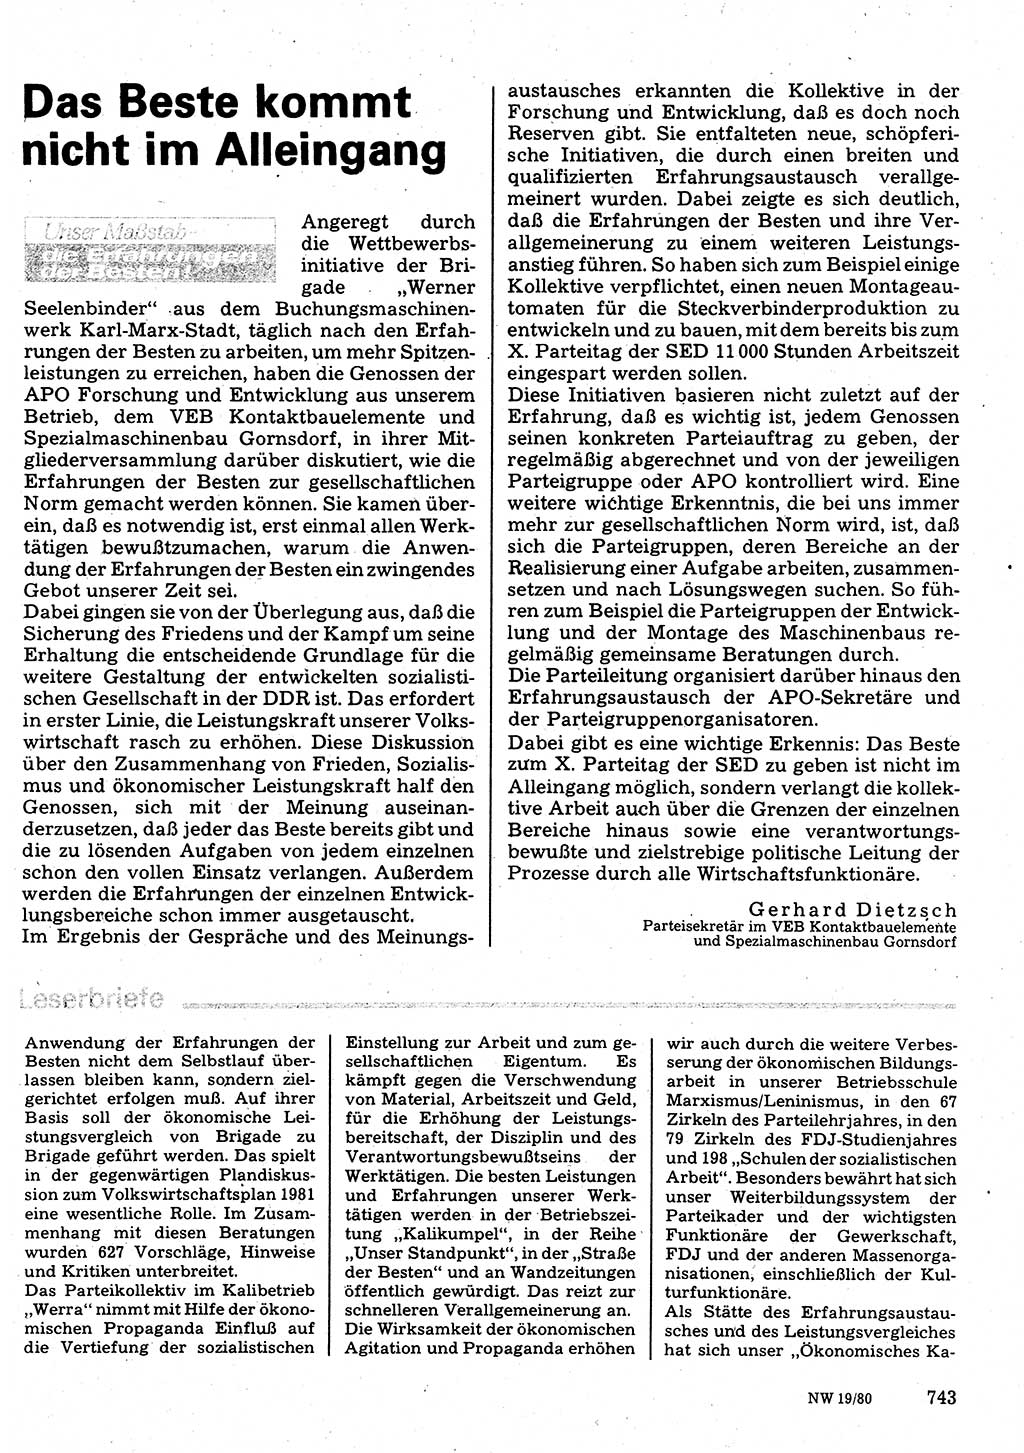 Neuer Weg (NW), Organ des Zentralkomitees (ZK) der SED (Sozialistische Einheitspartei Deutschlands) für Fragen des Parteilebens, 35. Jahrgang [Deutsche Demokratische Republik (DDR)] 1980, Seite 743 (NW ZK SED DDR 1980, S. 743)